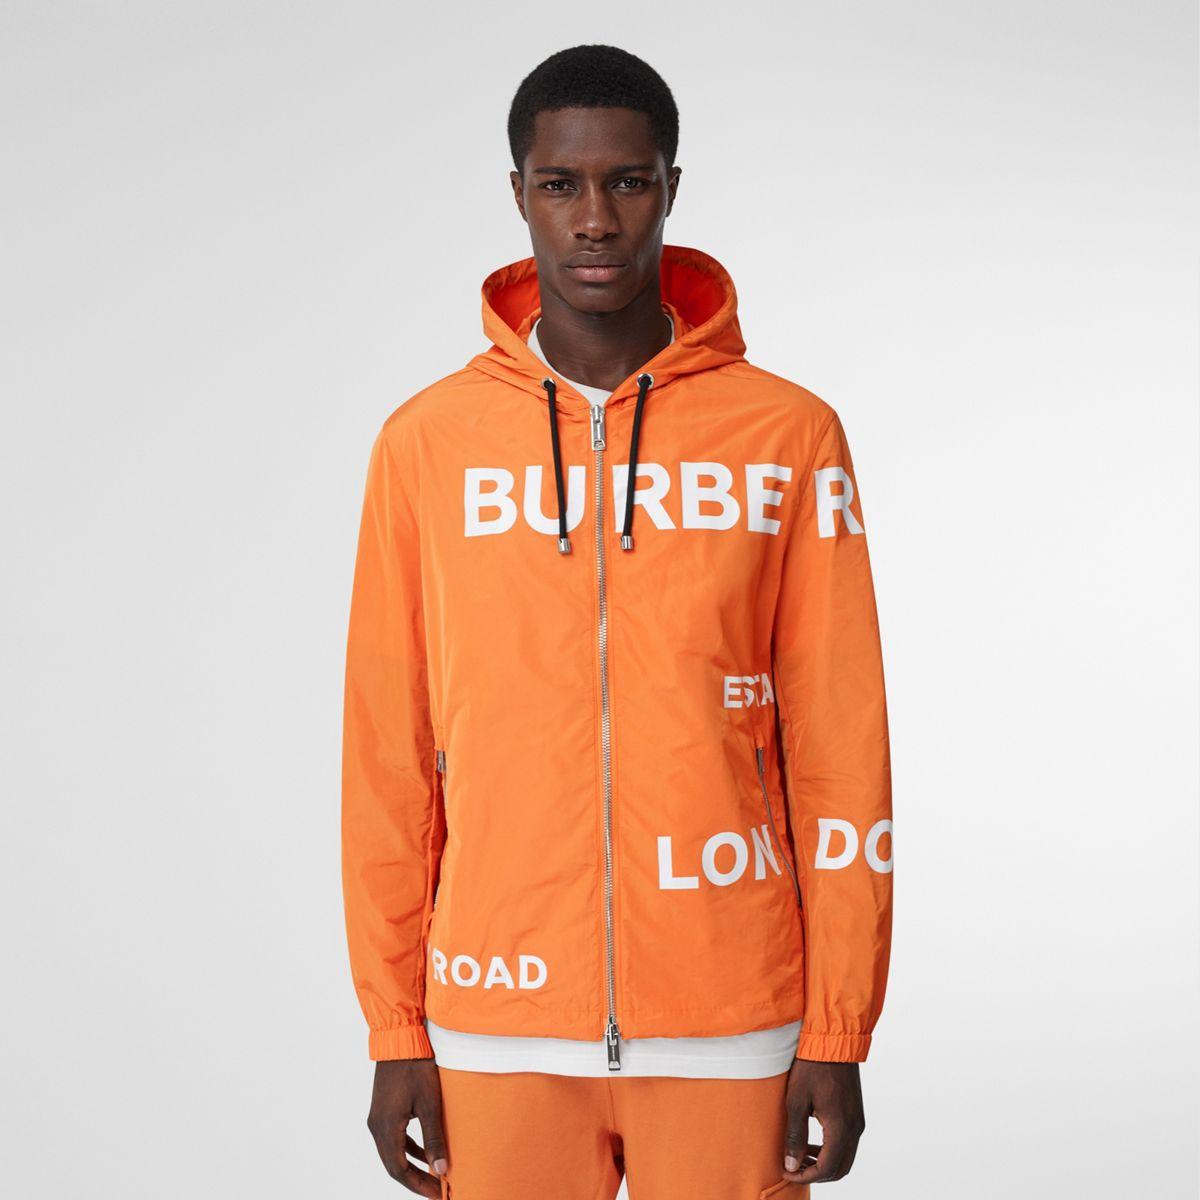 burberry hoodie orange